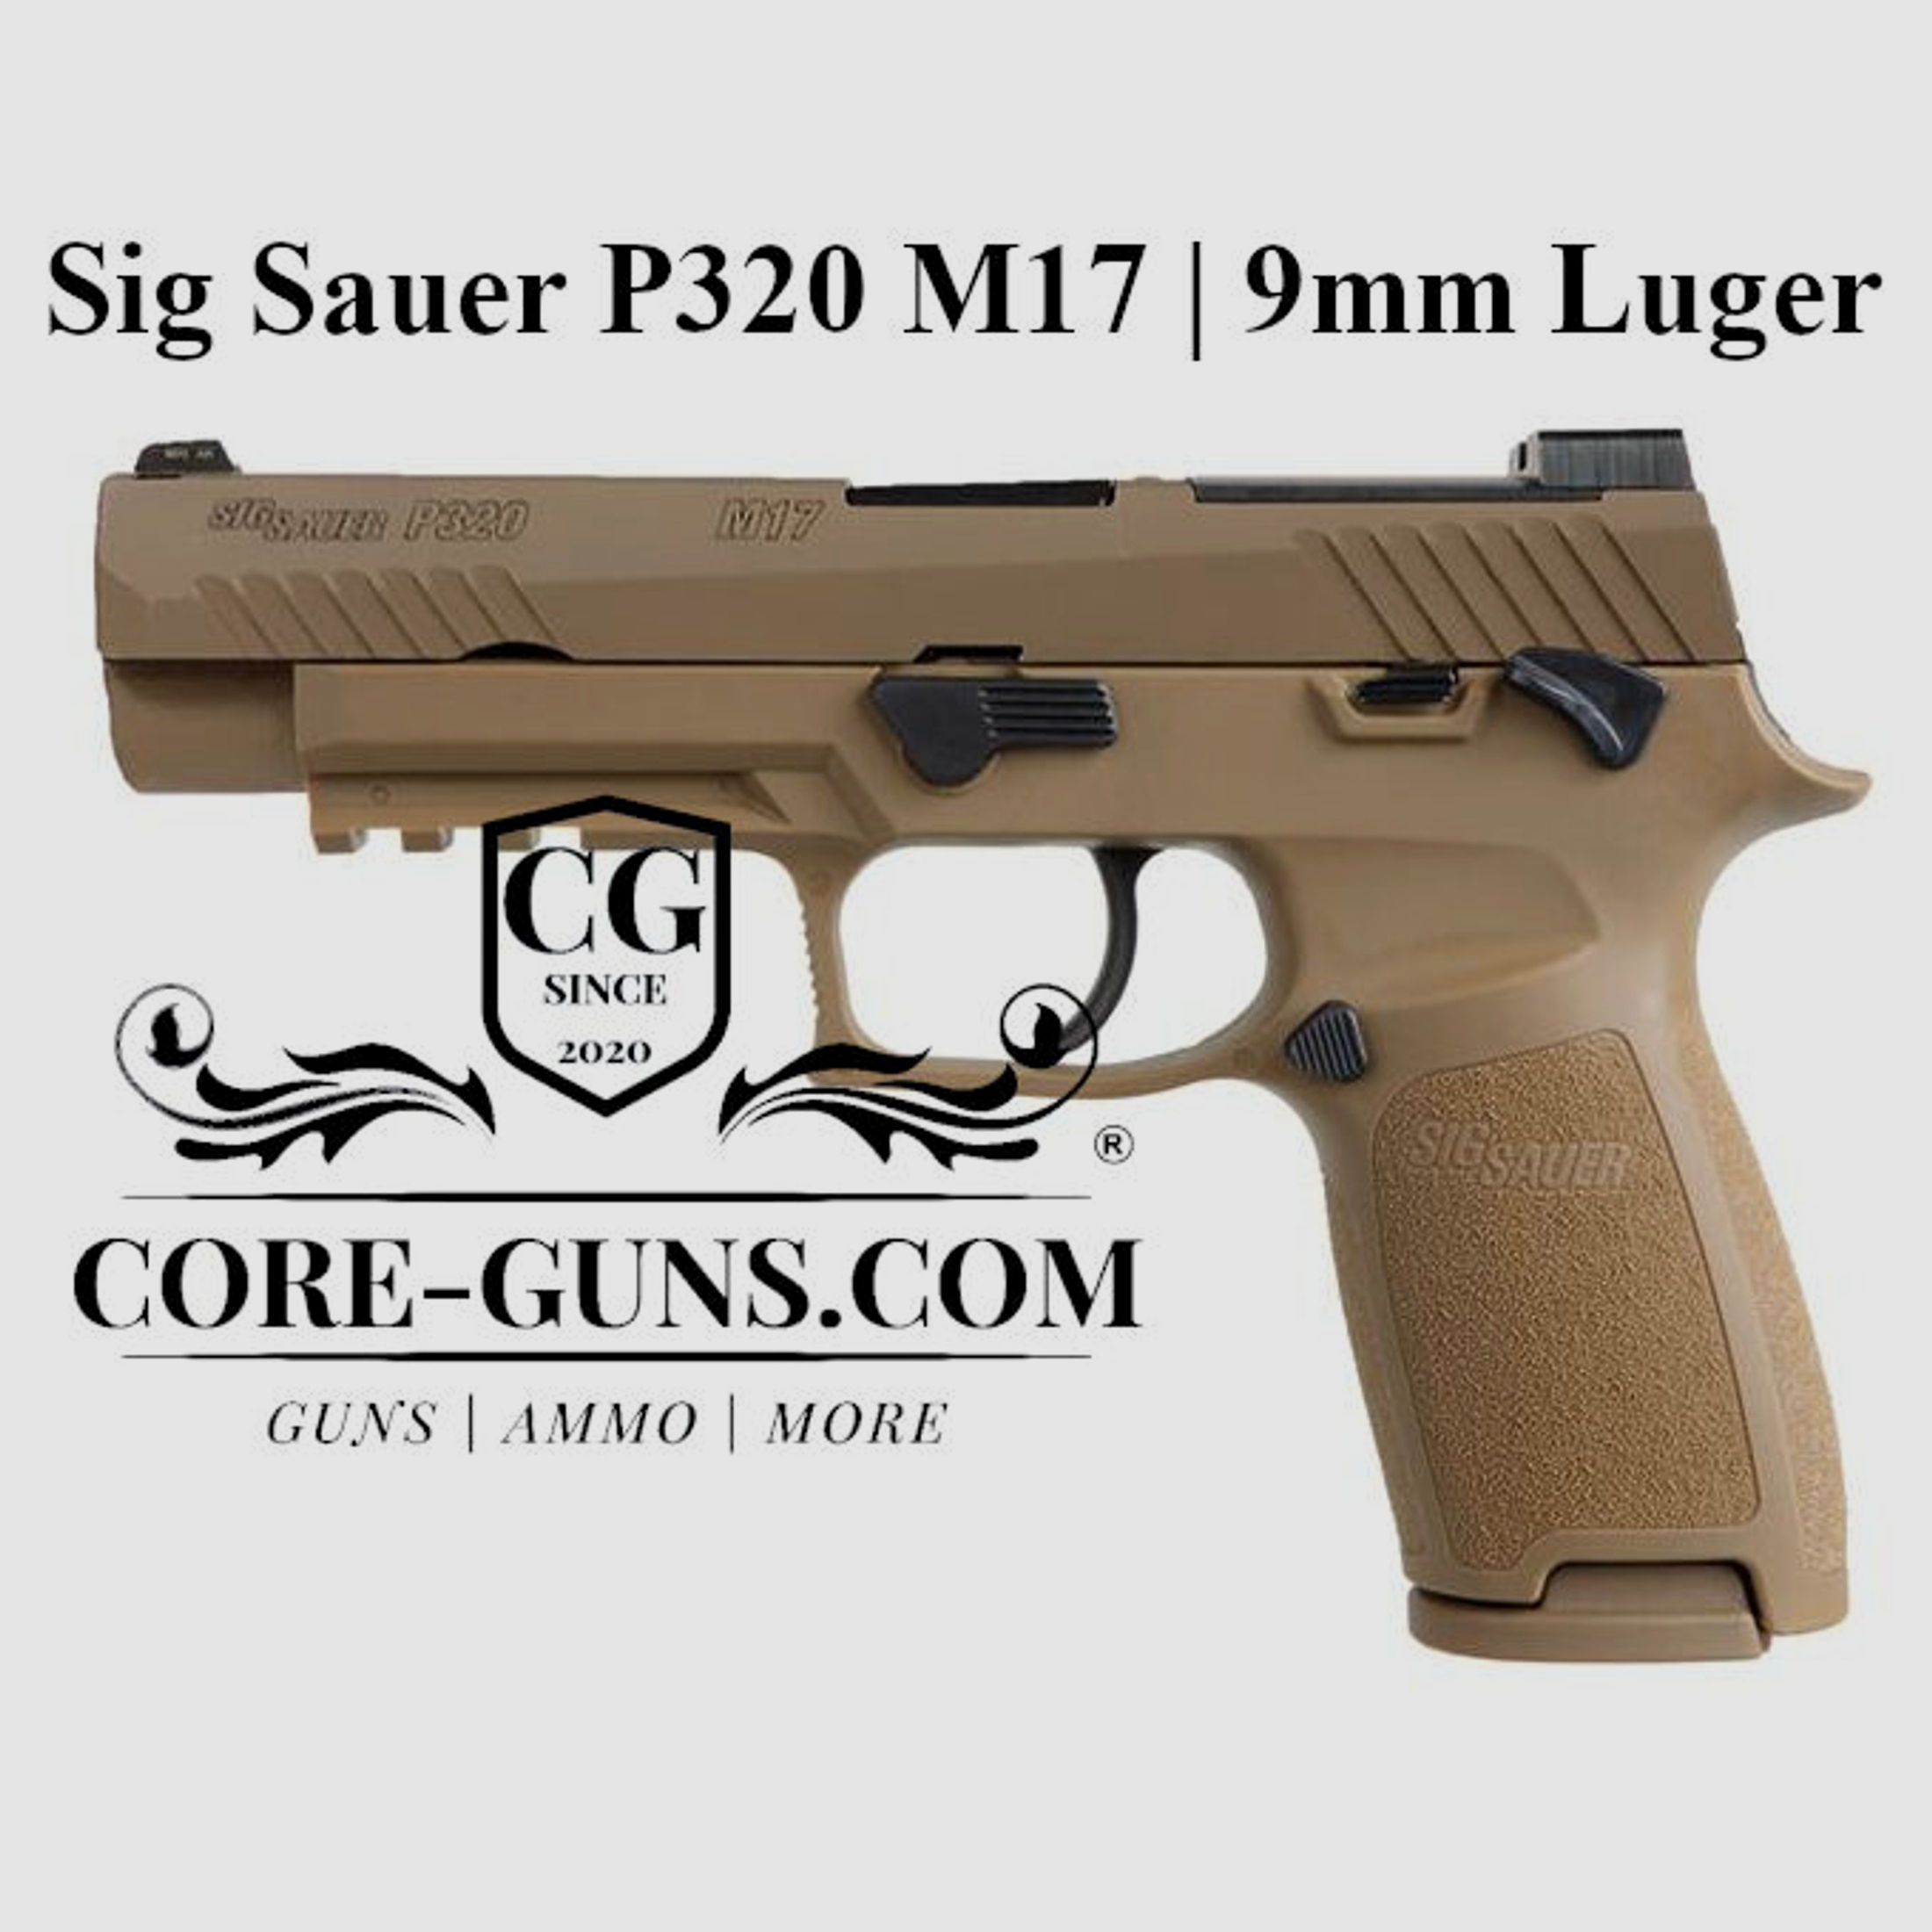 Sig Sauer P320 M17 halbautomatische Pistole Kaliber 9mm Luger in FDE	 Sig Sauer P320 M17 halbautomatische Pistole Kaliber 9mm Luger in FDE